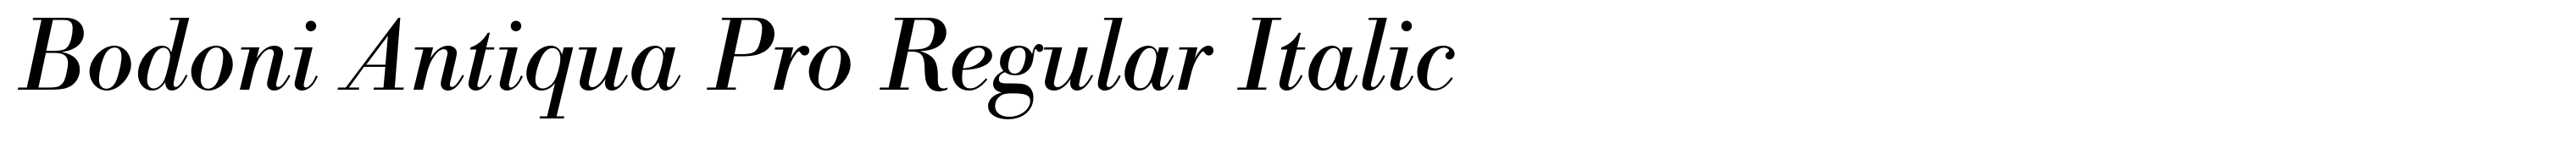 Bodoni Antiqua Pro Regular Italic